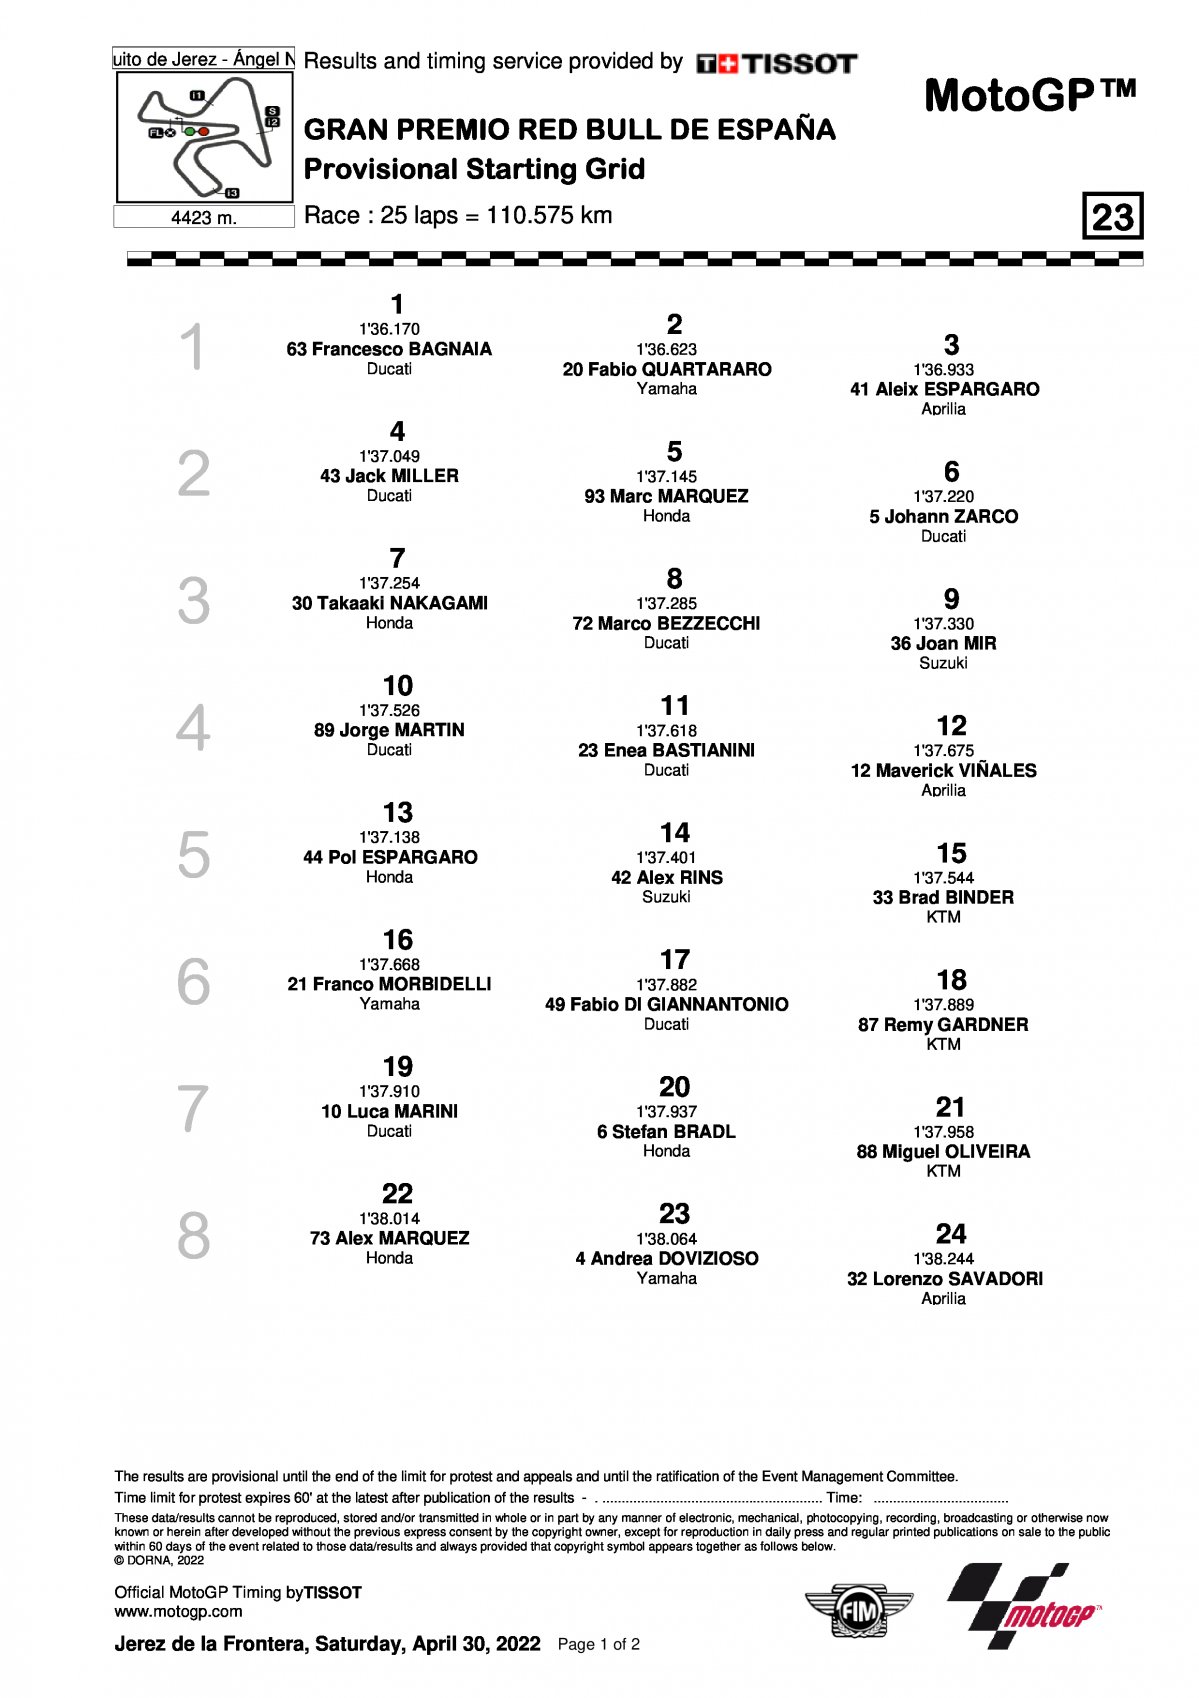 Стартовая решетка Гран-При Испании MotoGP (1/05/2022)